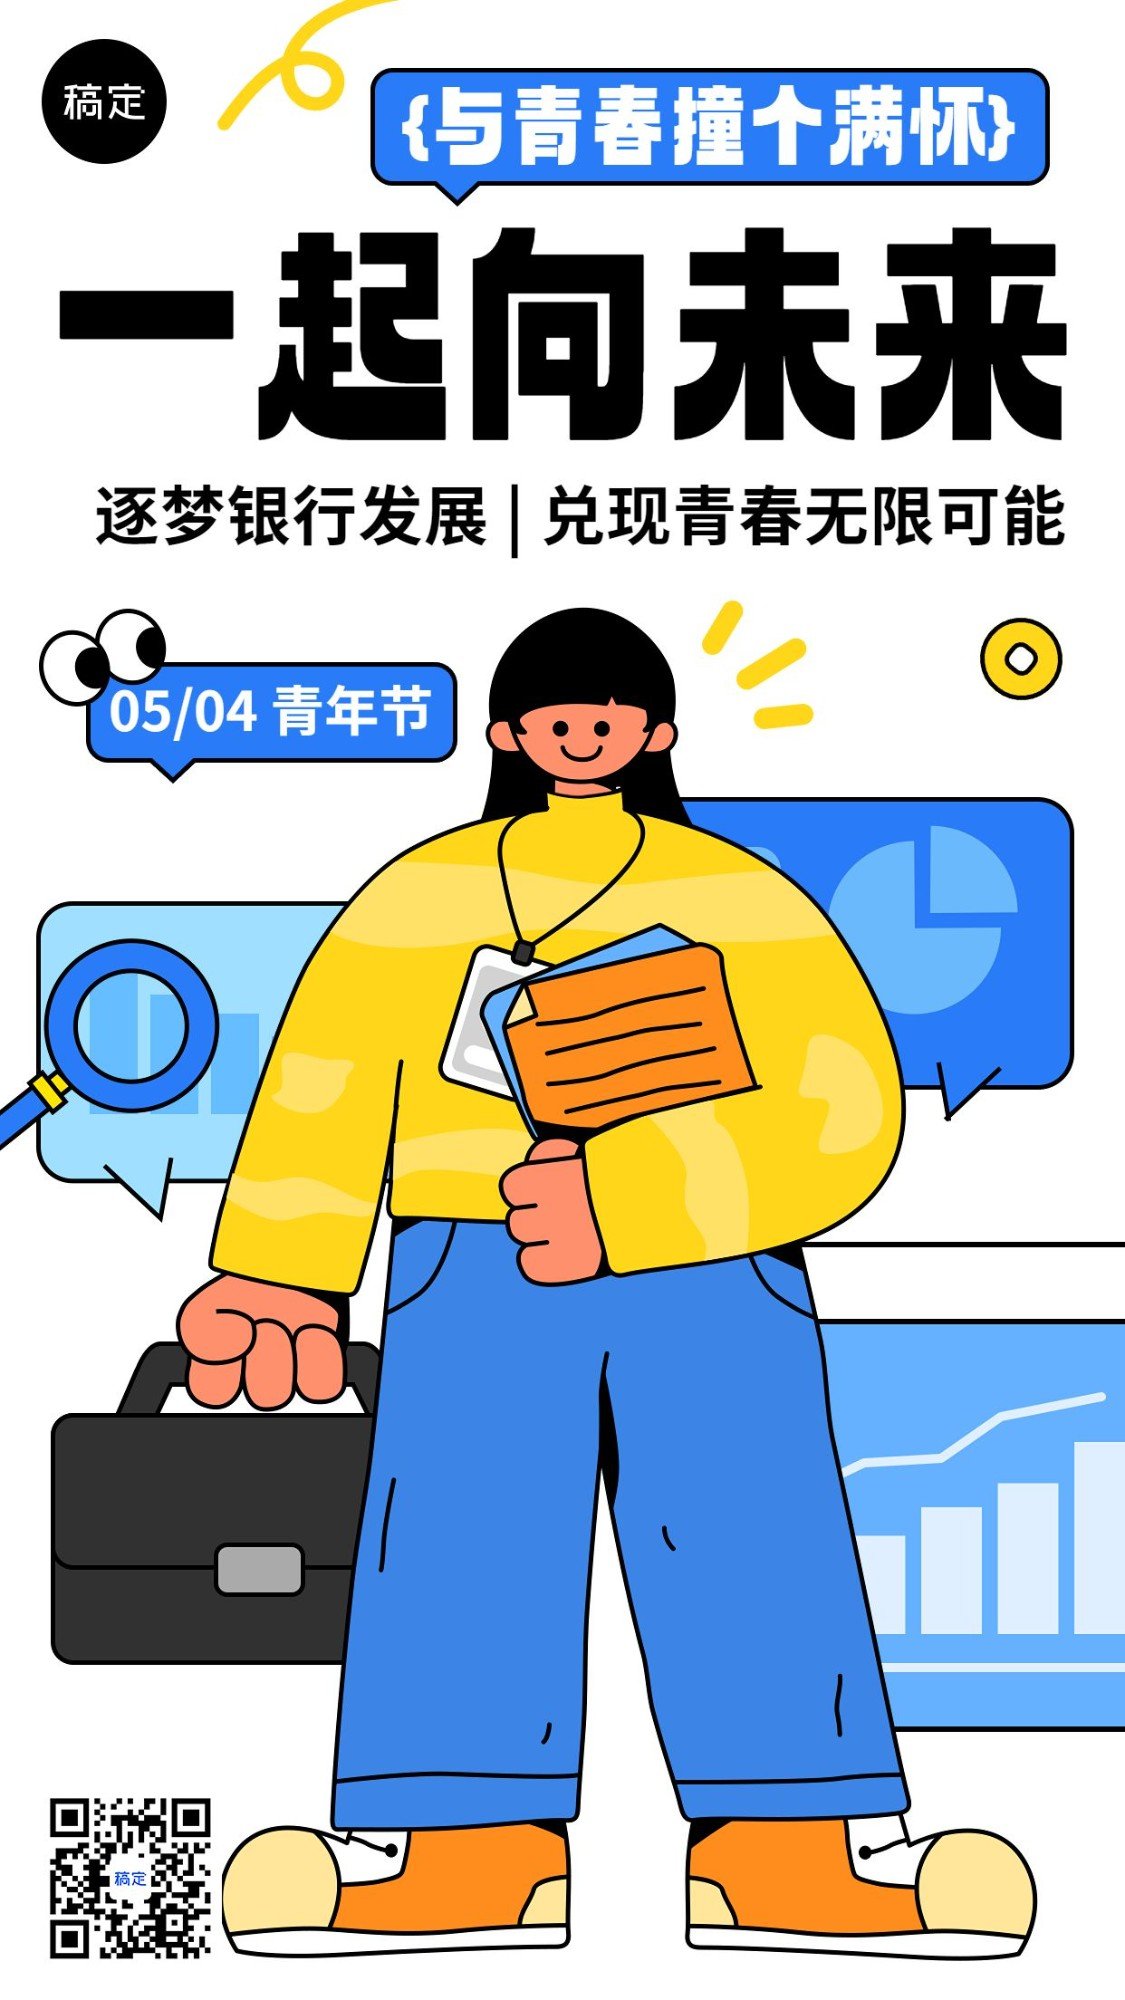 五四青年节金融节日祝福描边插画手机海报